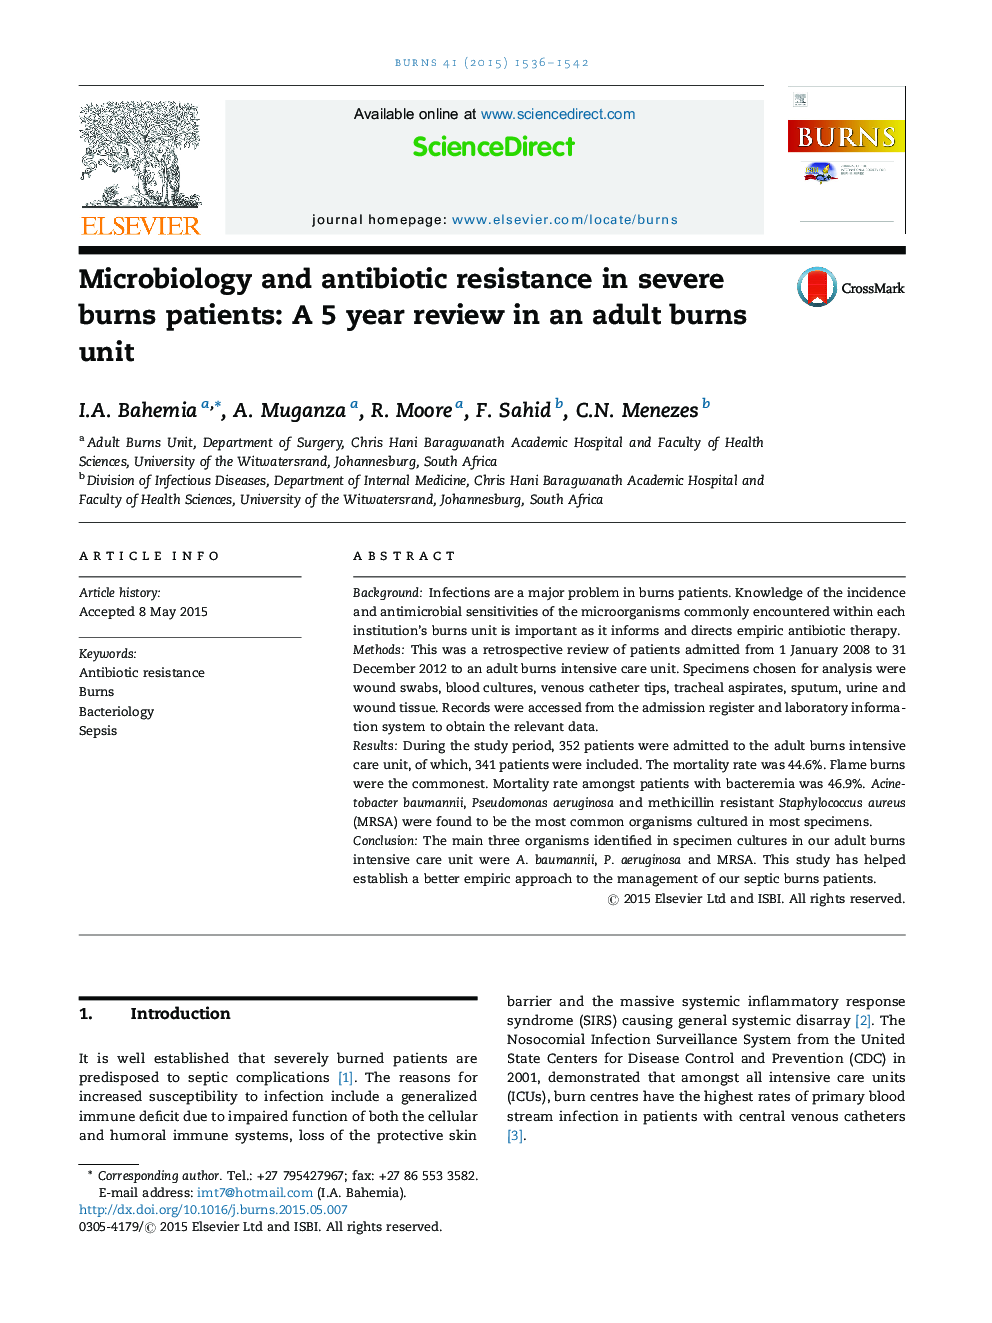 میکروب شناسی و مقاومت آنتی بیوتیک در بیماران سوختگی شدید: بررسی 5 ساله در یک واحد سوختگی بزرگسالان